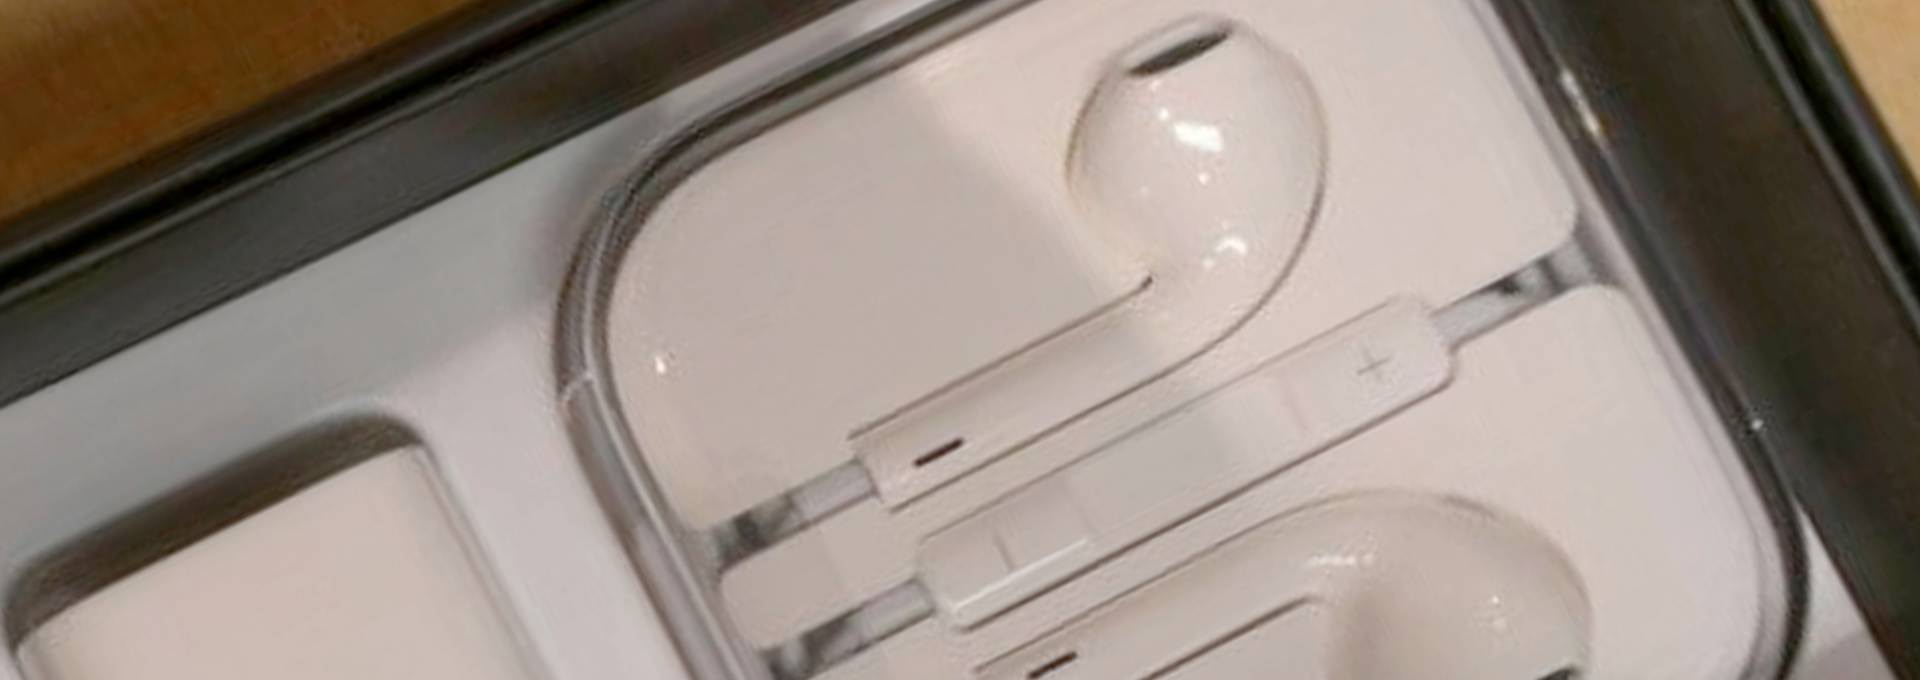 Images: Tout premier déballage d’un iPhone 5